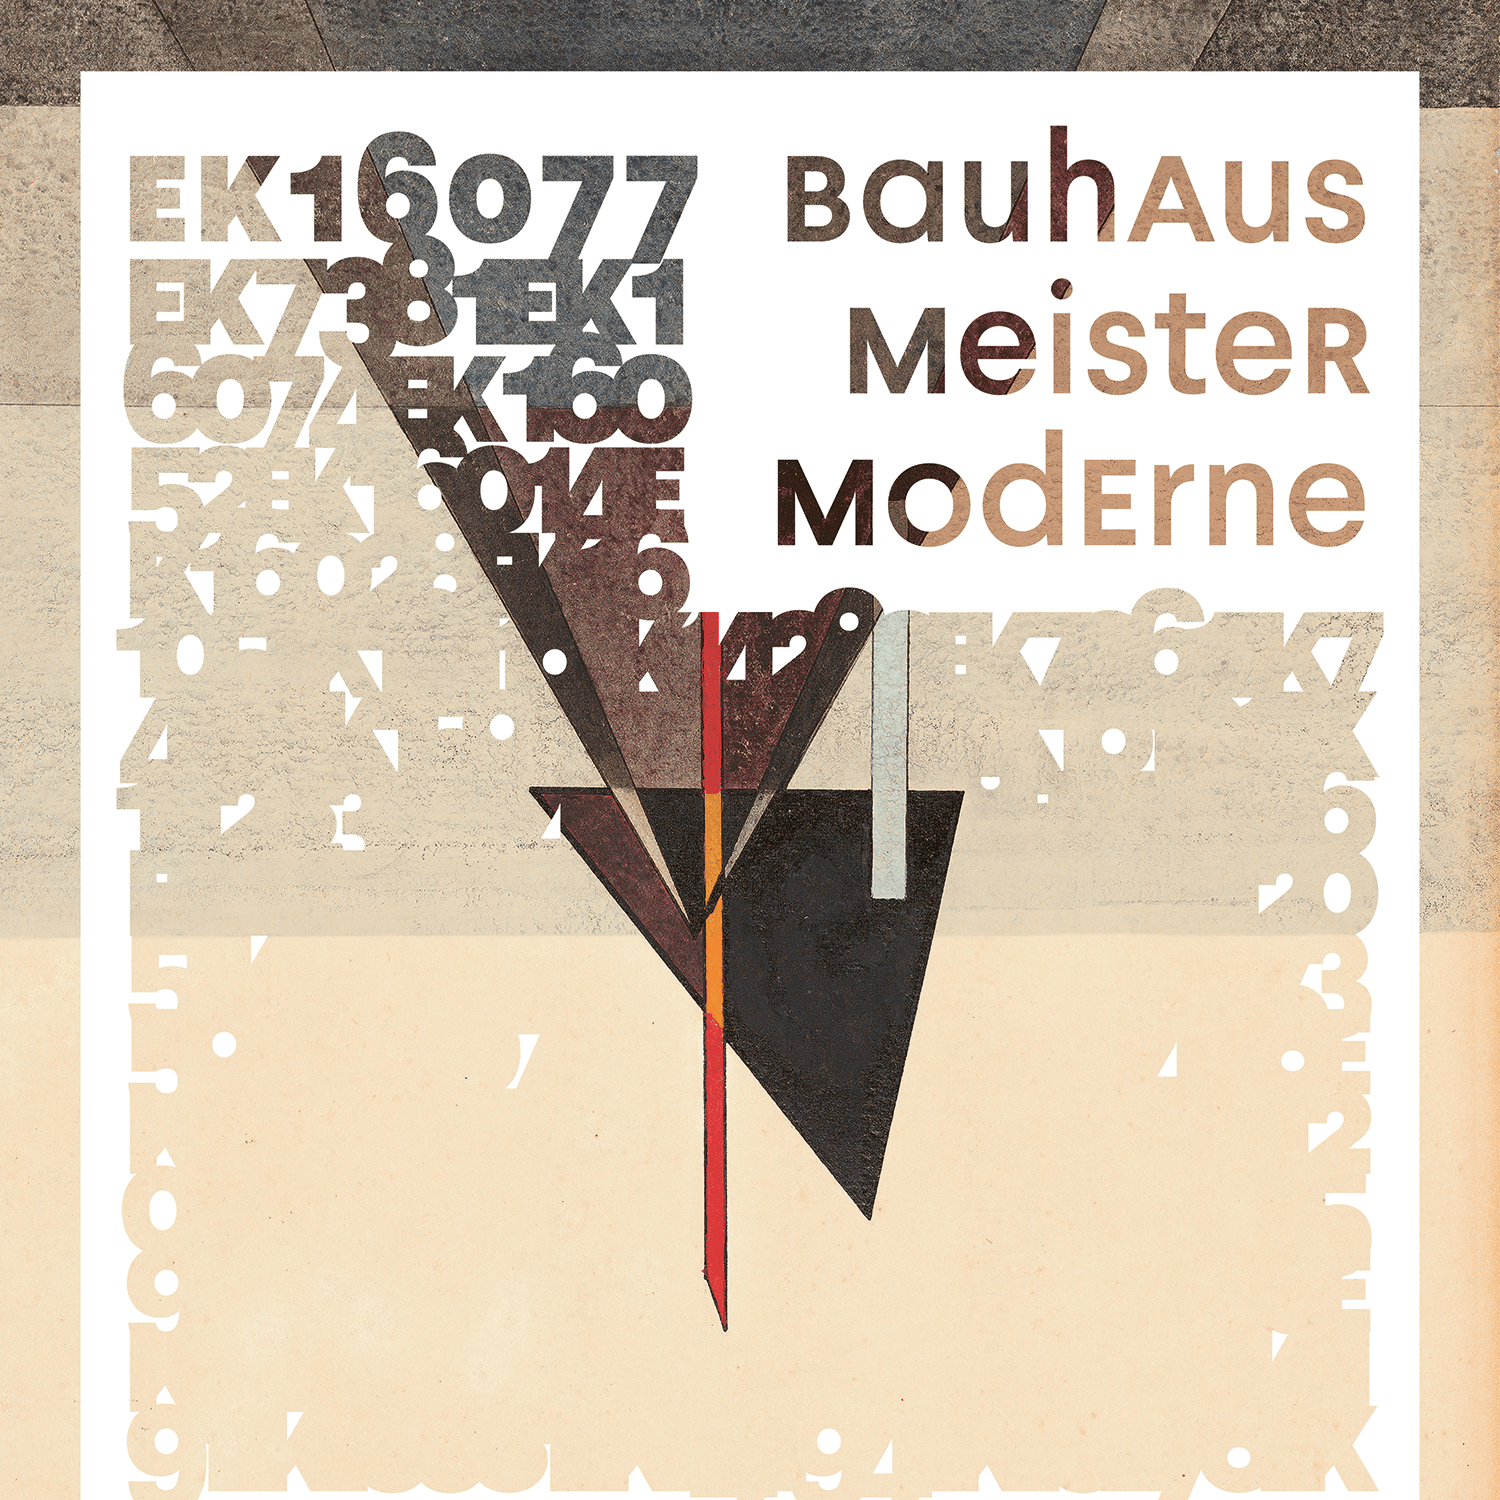 Imagen de El maestro modernista de la Bauhaus